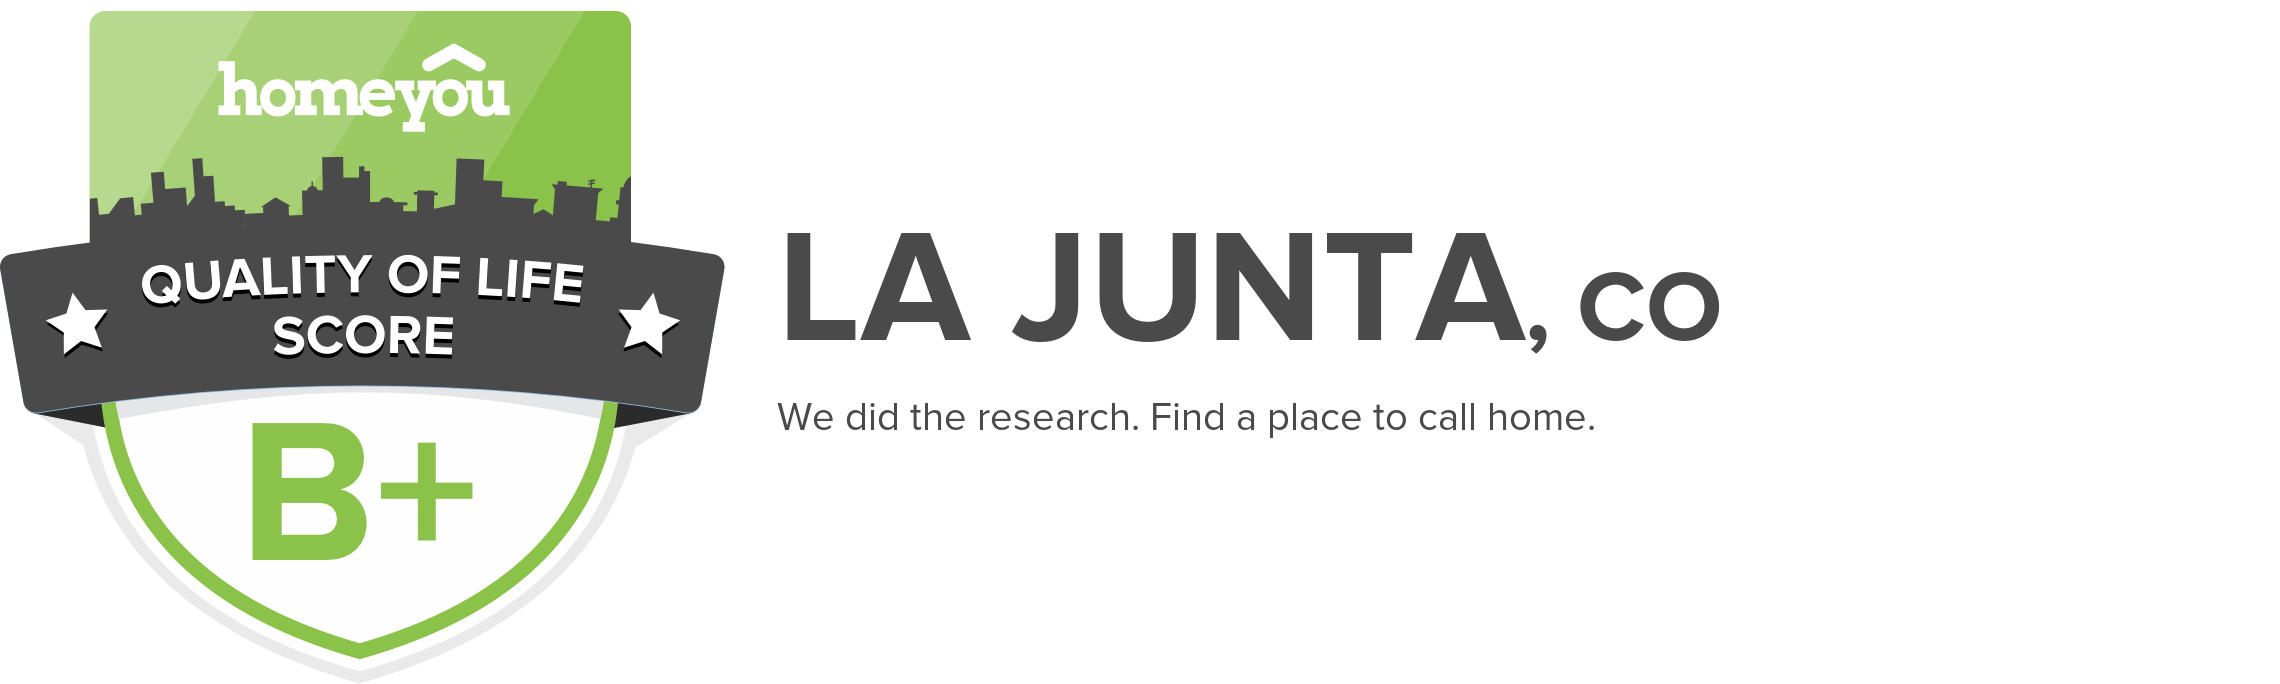 La Junta, CO